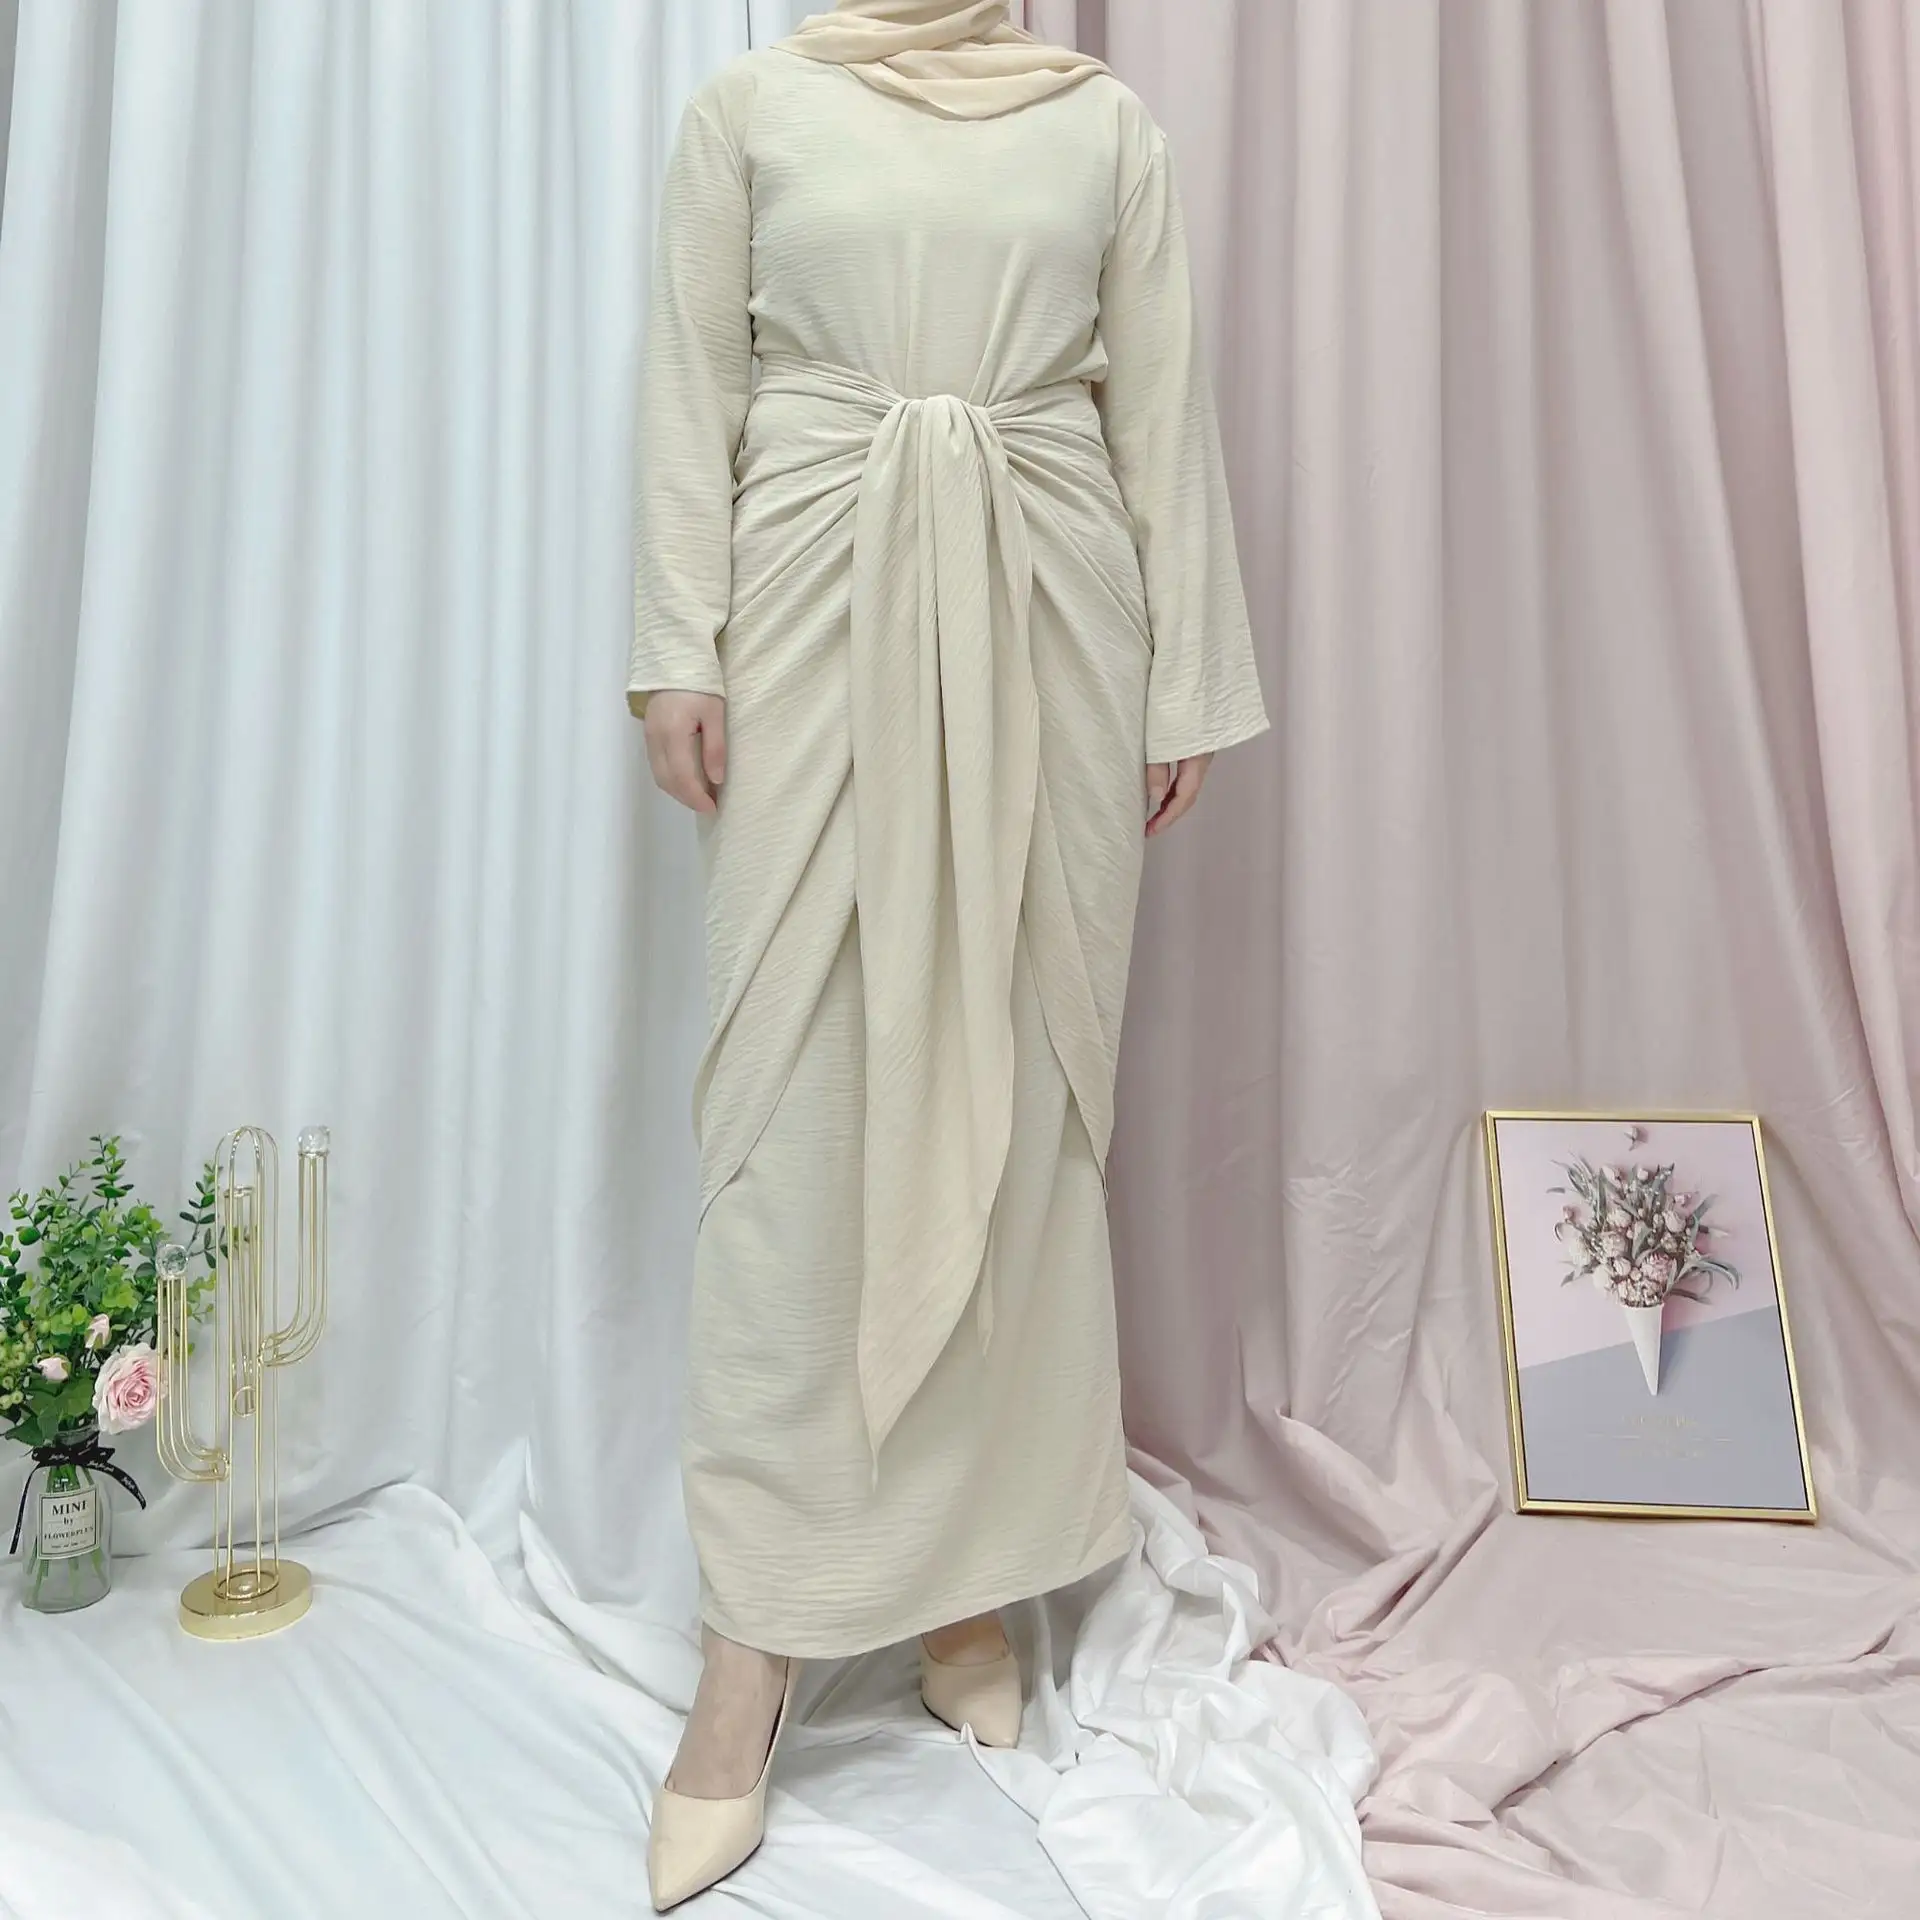 최신 여성 솔리드 셀프 벨트 전면 여성의 이슬람 Abaya 두바이 새틴 튜닉 원피스 바닥 길이 일반 염색 자연 허리 라인